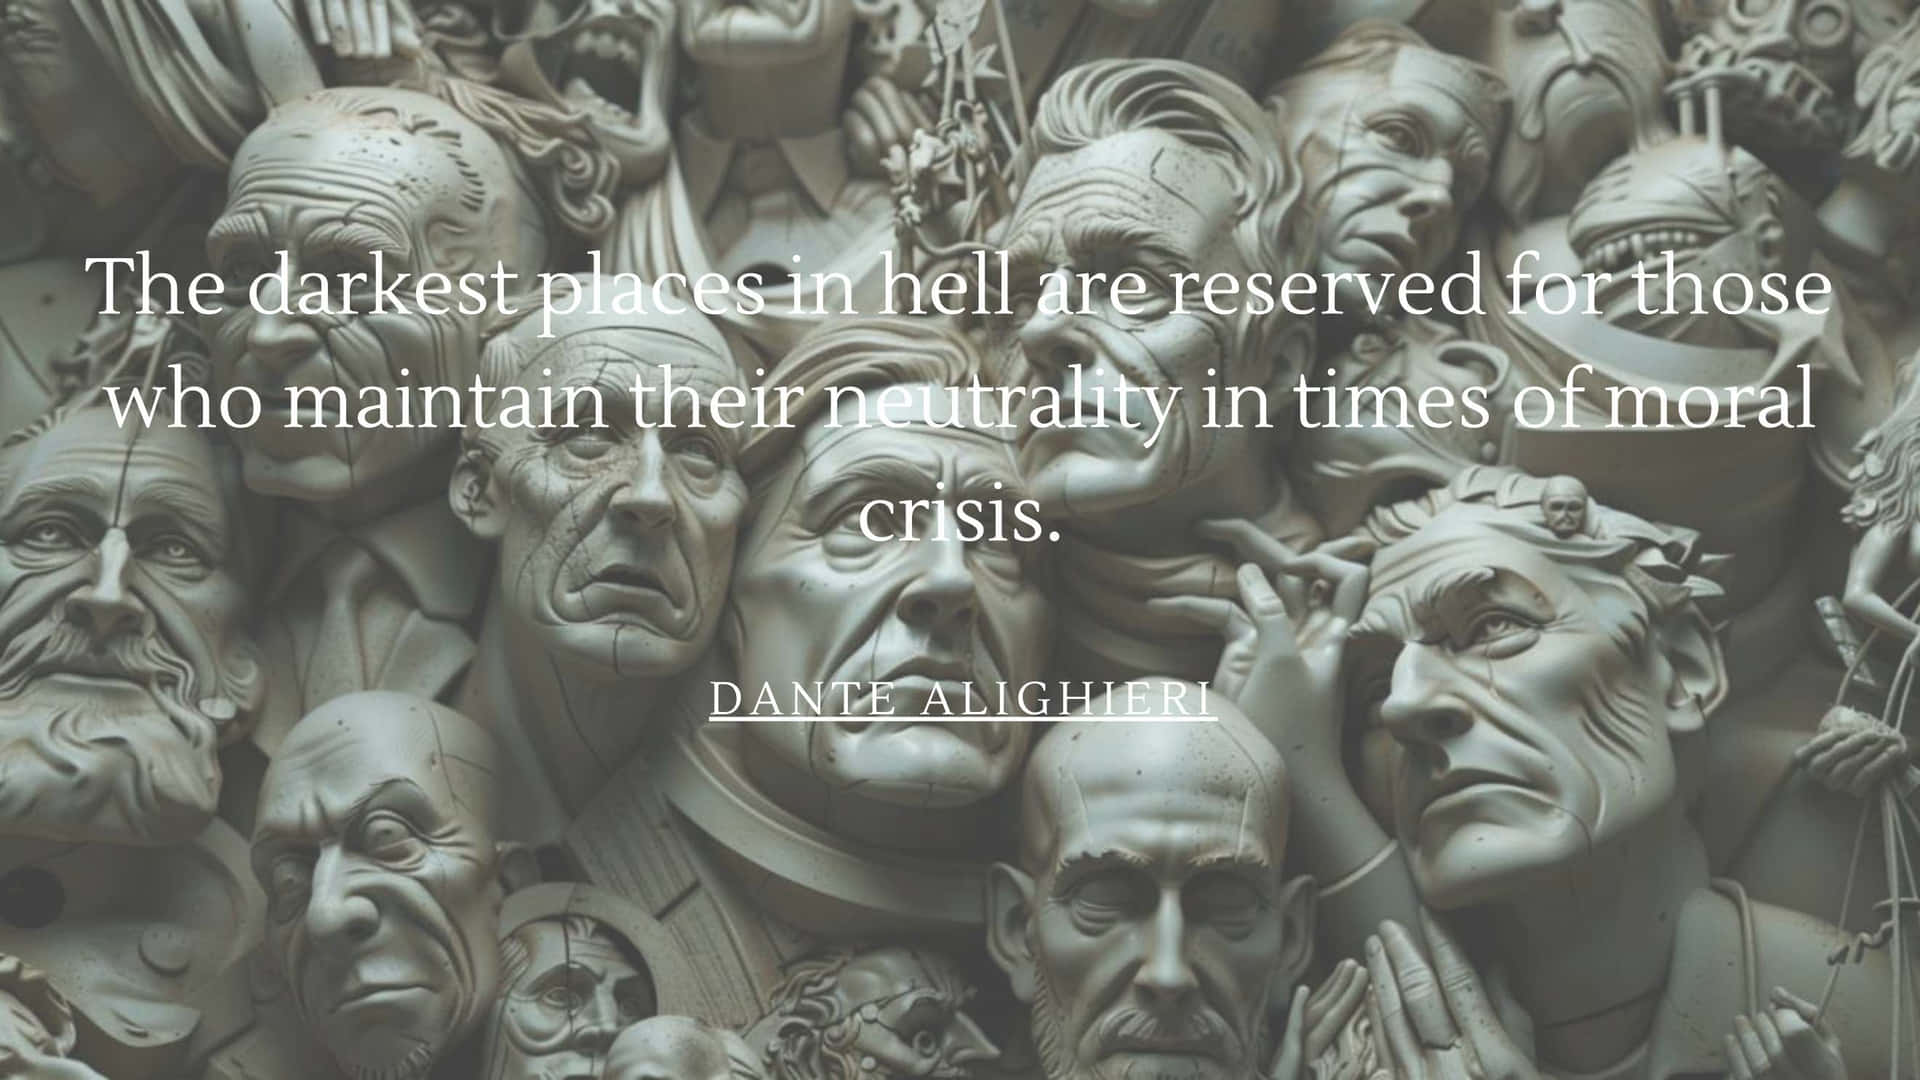 Dante Neutrality Quote Sculpture Faces Wallpaper